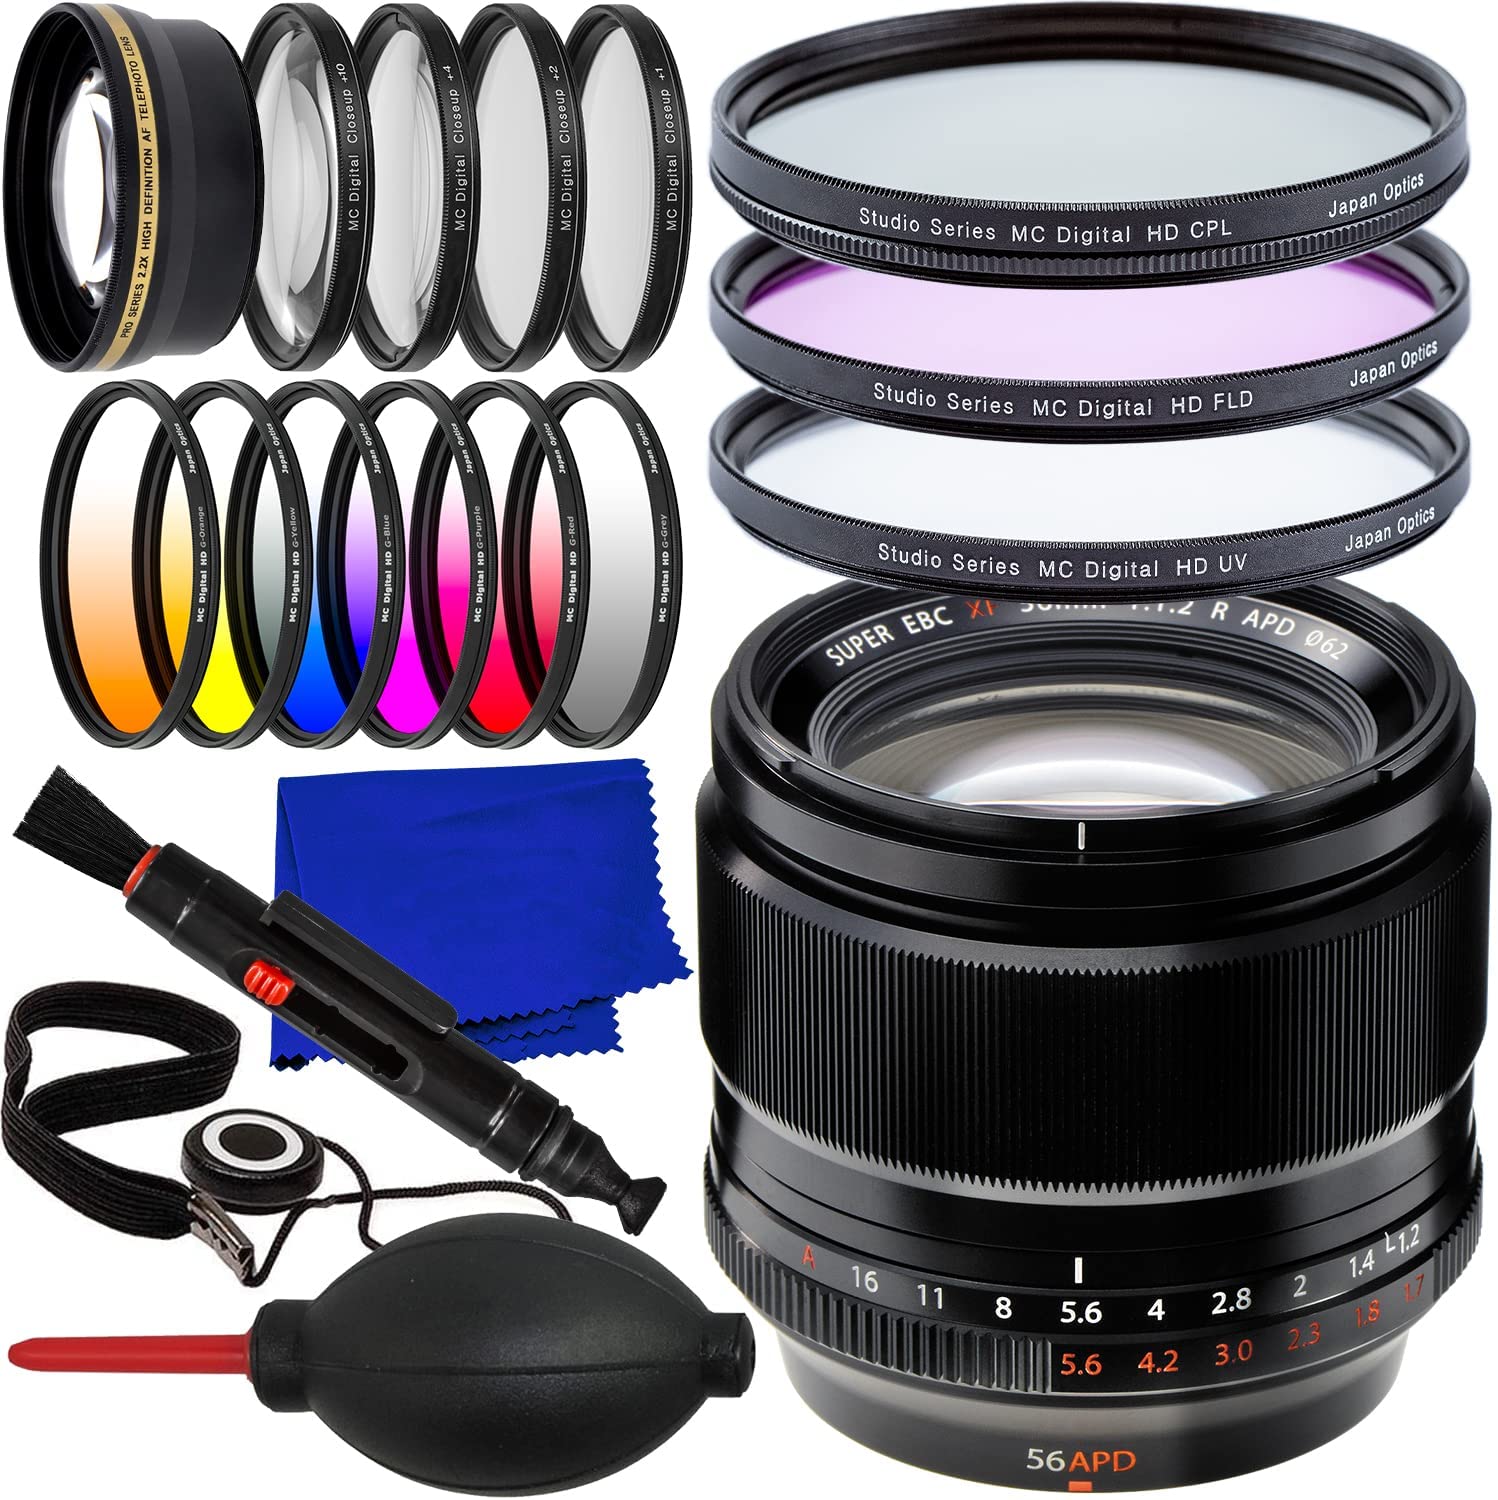 Fujifilm XF 56mm f/1.2 R APD Lens + 6PC Gradual Color Filter Kit, 2.2X Telephoto Lens Attachment, 3PC UV Filter Kit (UV, CPL, FLD), 4PC Macro Close-Up Filter Kit & More (24pc Bundle)